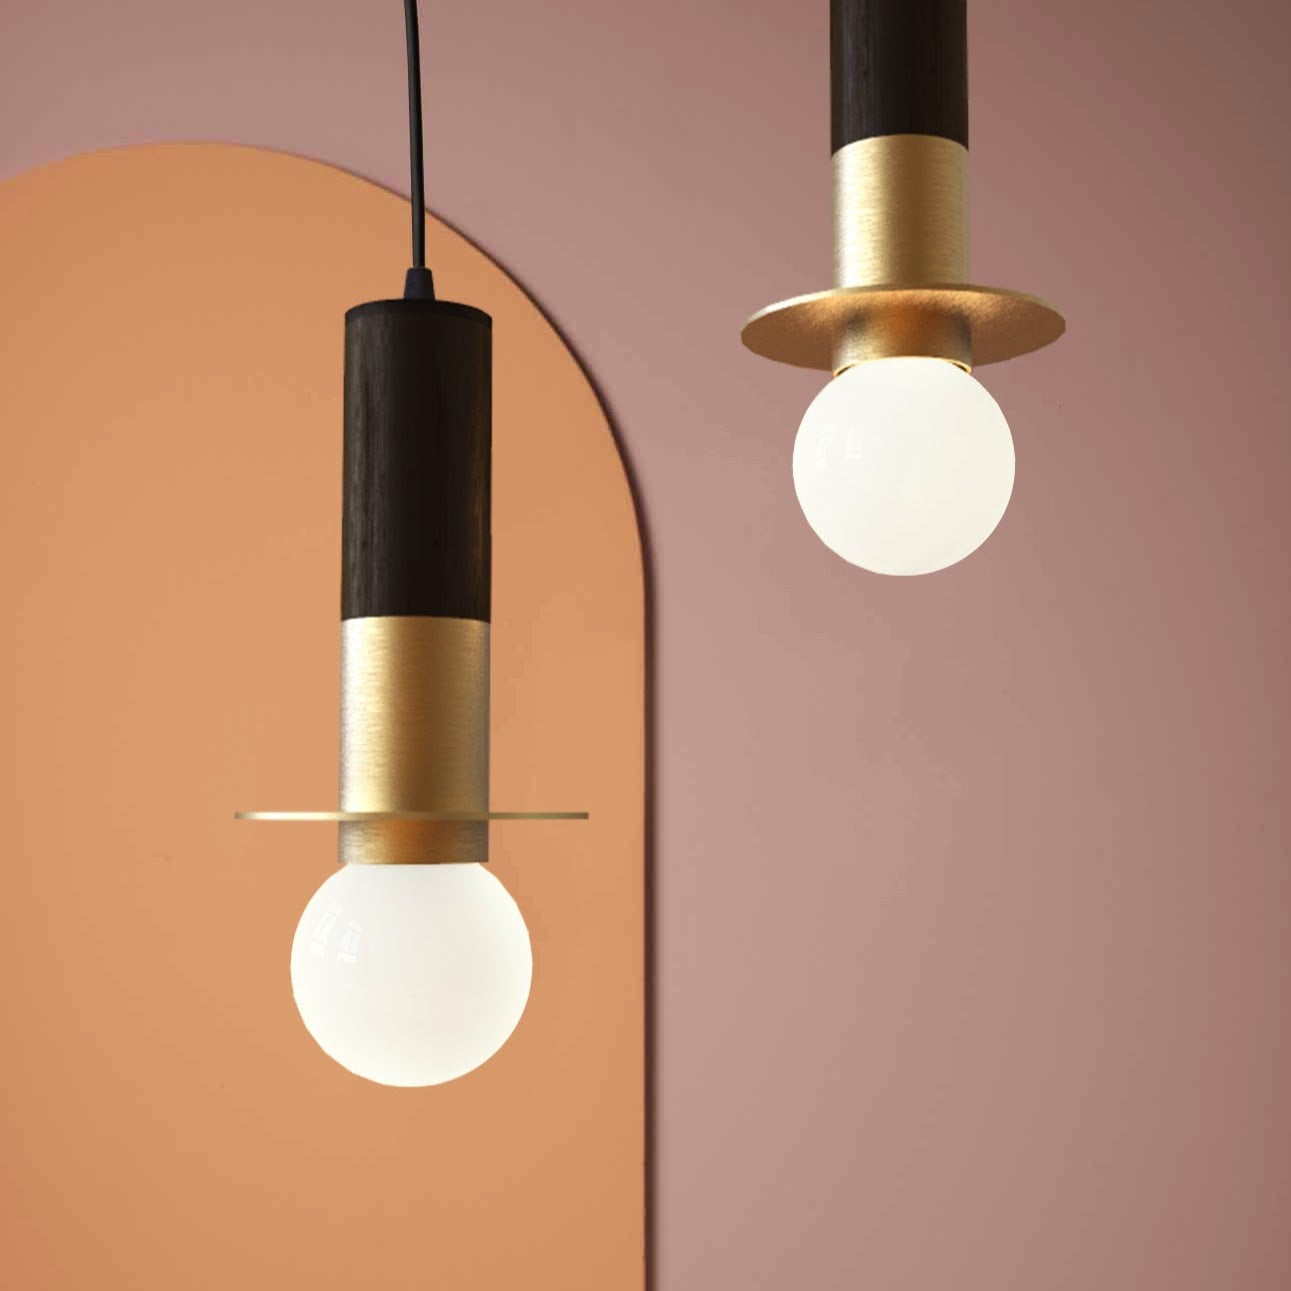 Firefly Pendant Lamp: Designer Bamboo Pendant Lamp Japandi Handmade Bar Lighting Restaurants Decor Home Bar